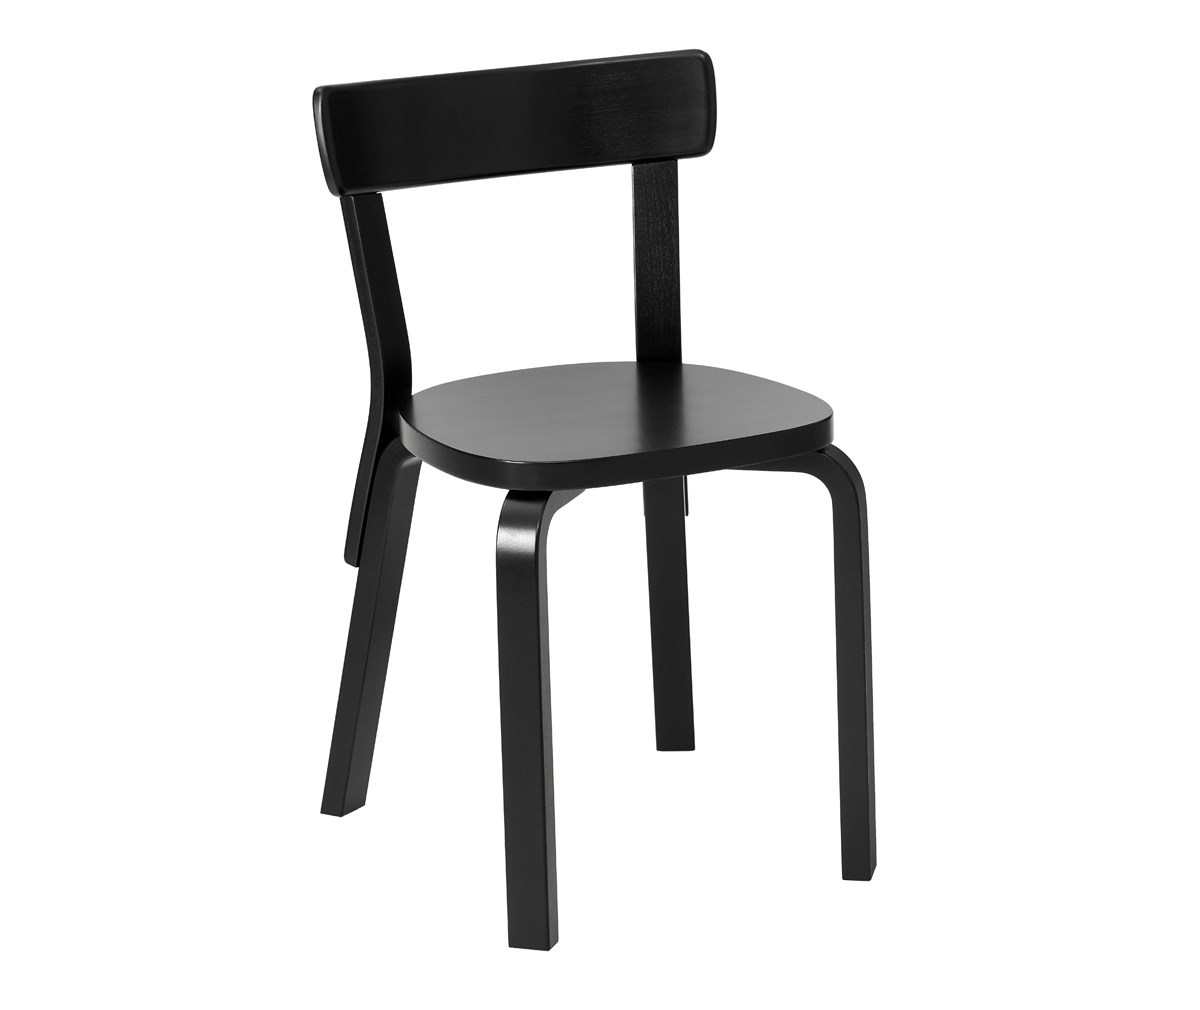 Chair 69